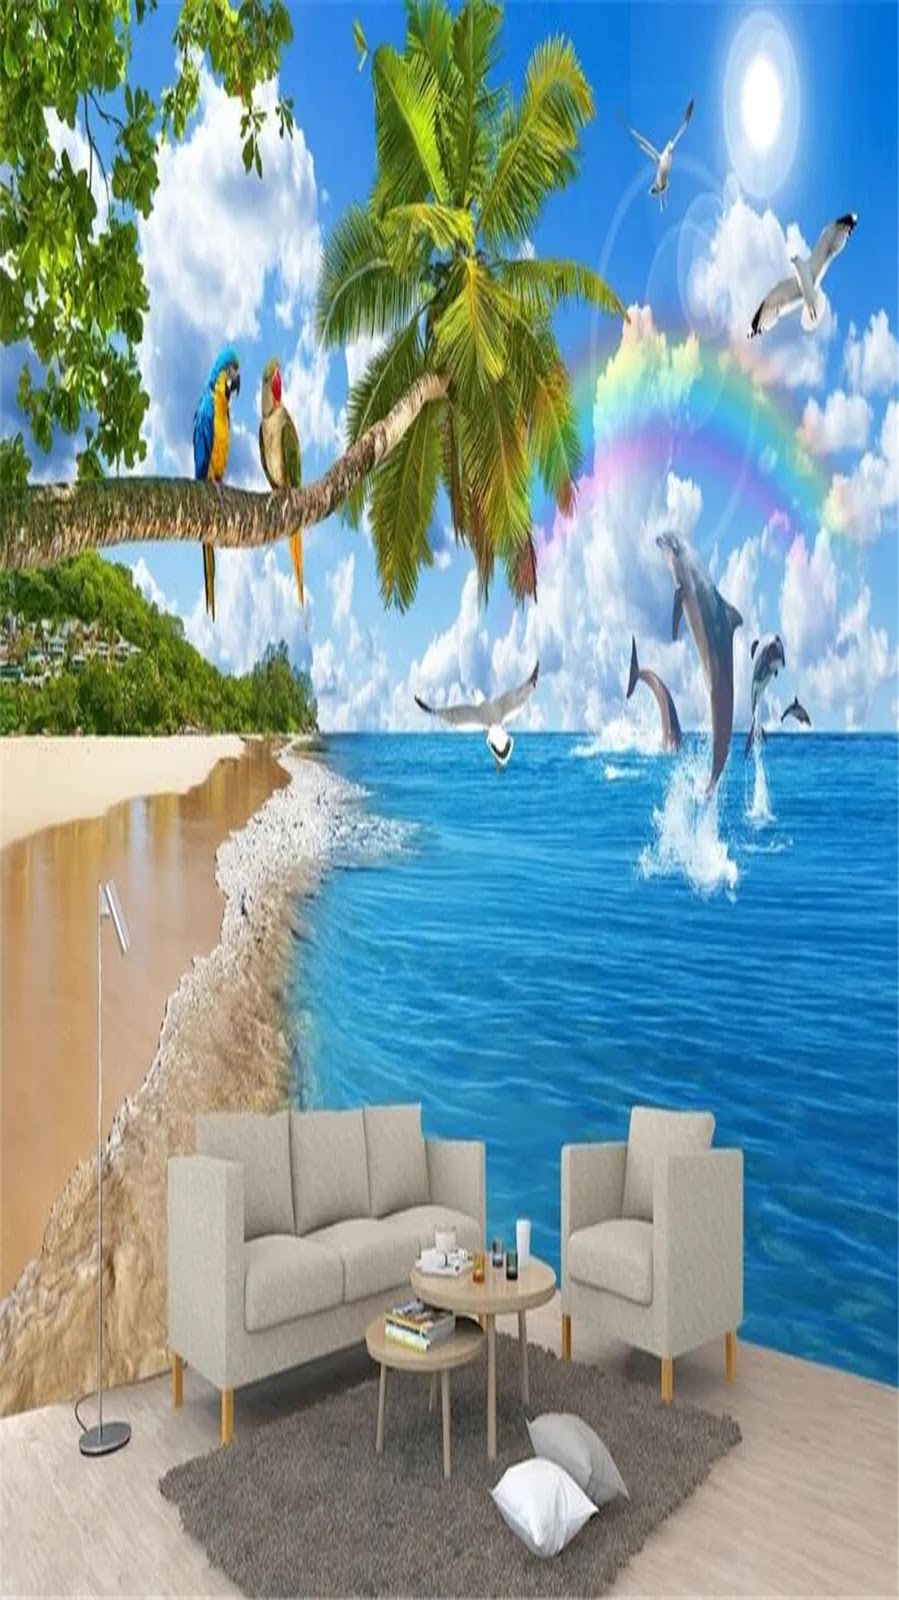  Wallpaper HP Pemandangan Alam yang Menawan: Gunung, Danau, Perahu, dan Air